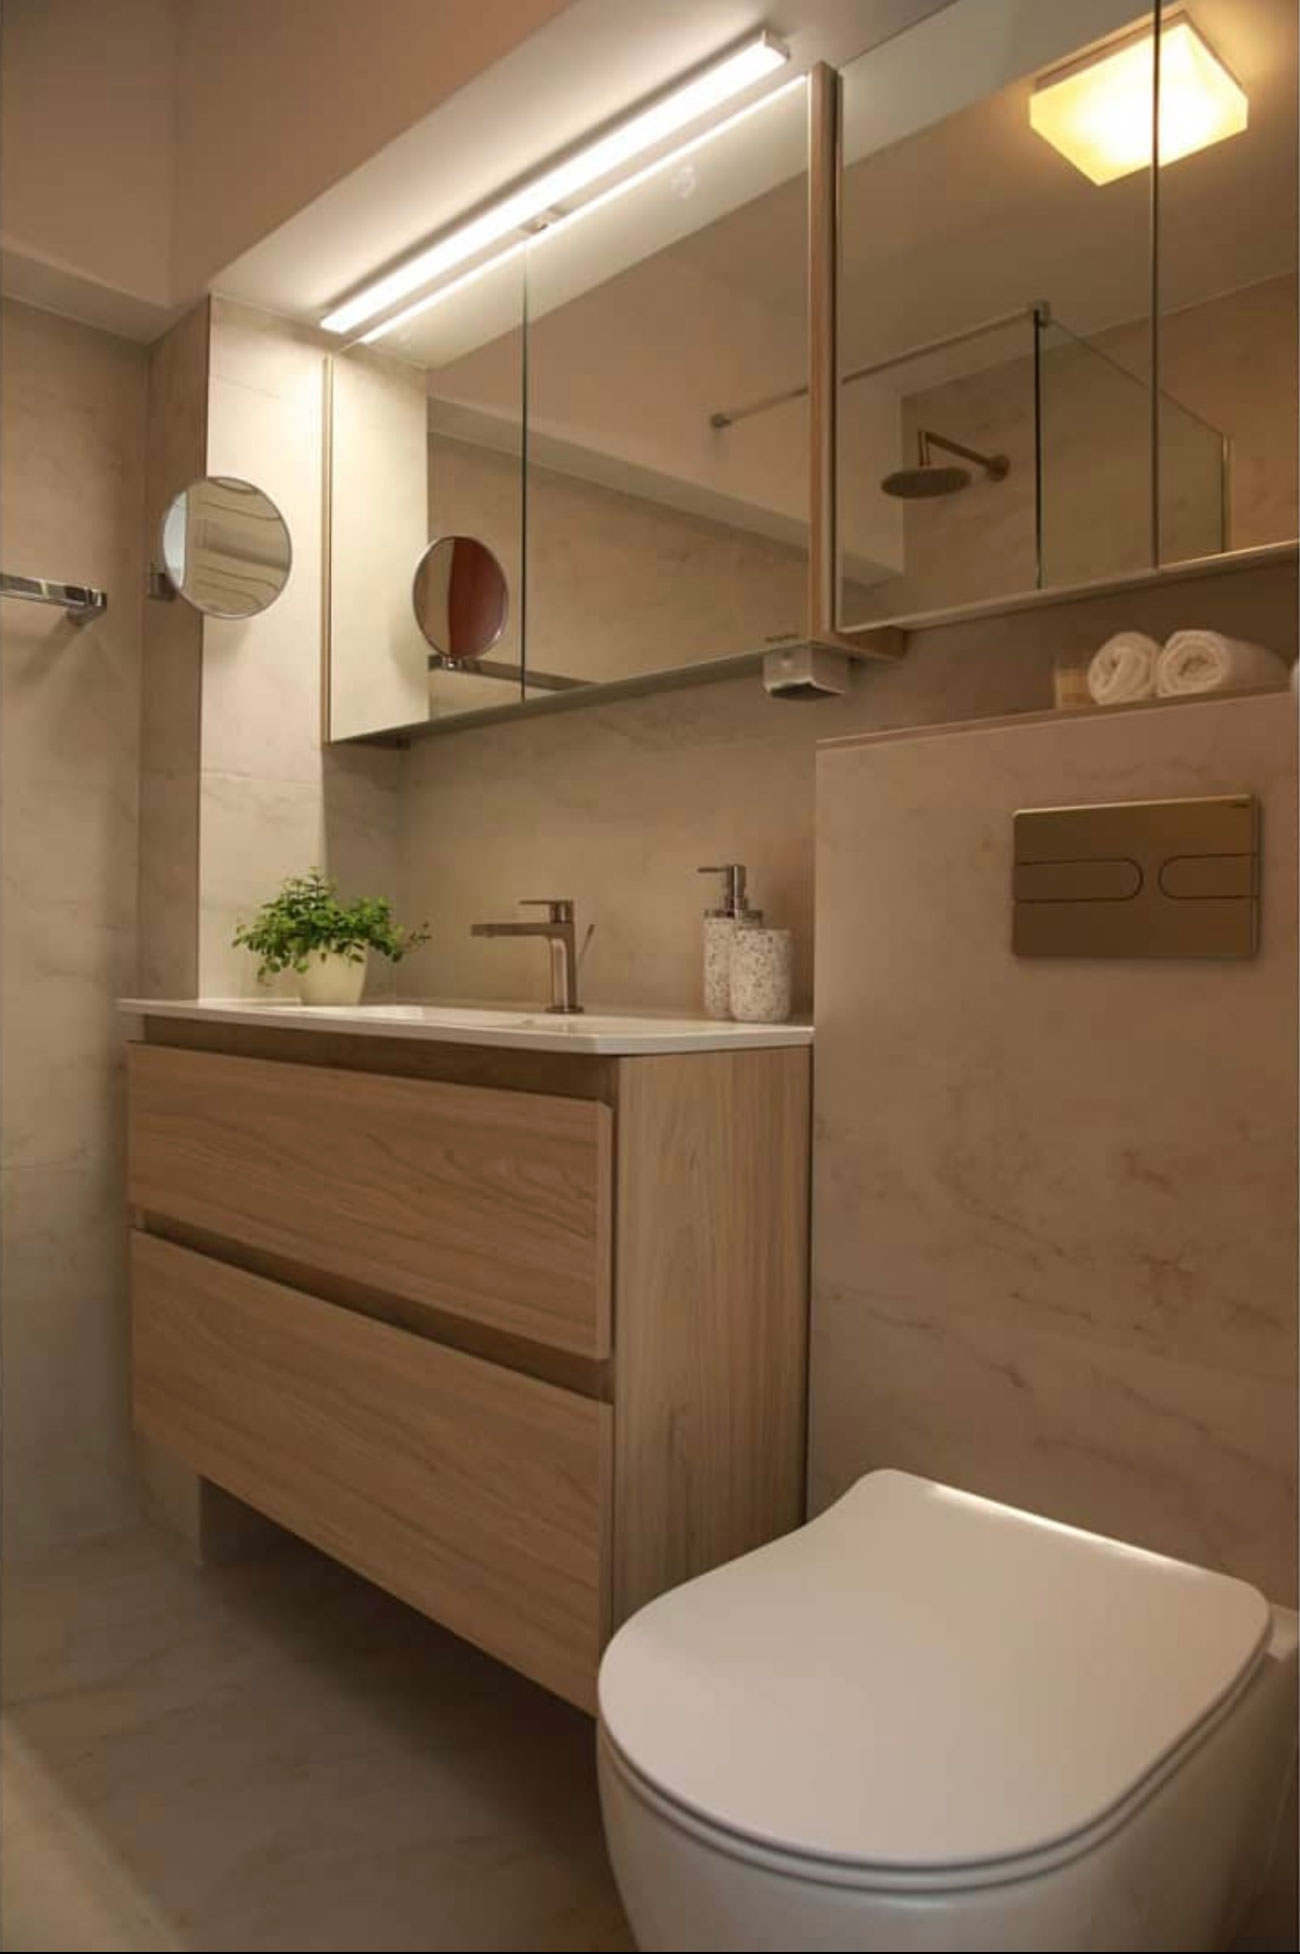 Mueble Camerino de Baño con Espejo: Elegancia y Funcionalidad